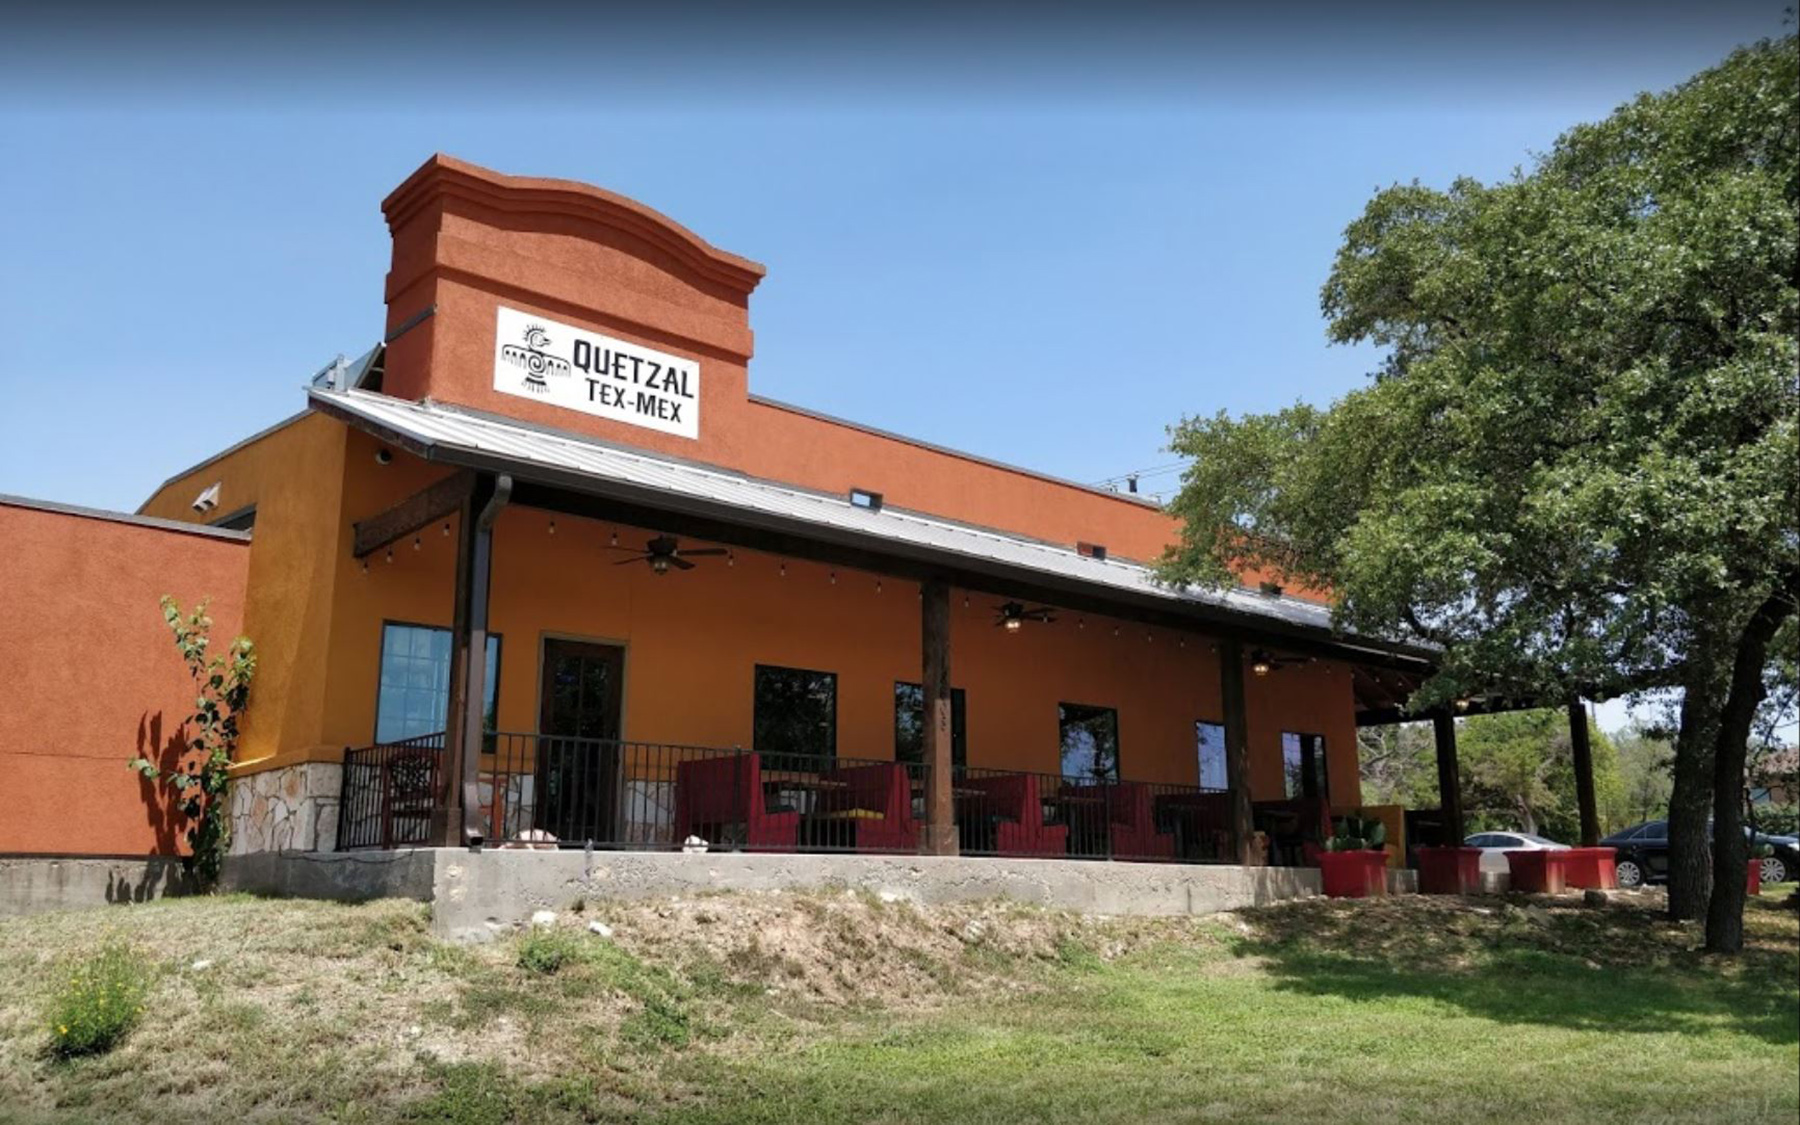 Quetzal - Lake Travis Tex Mex Restaurant